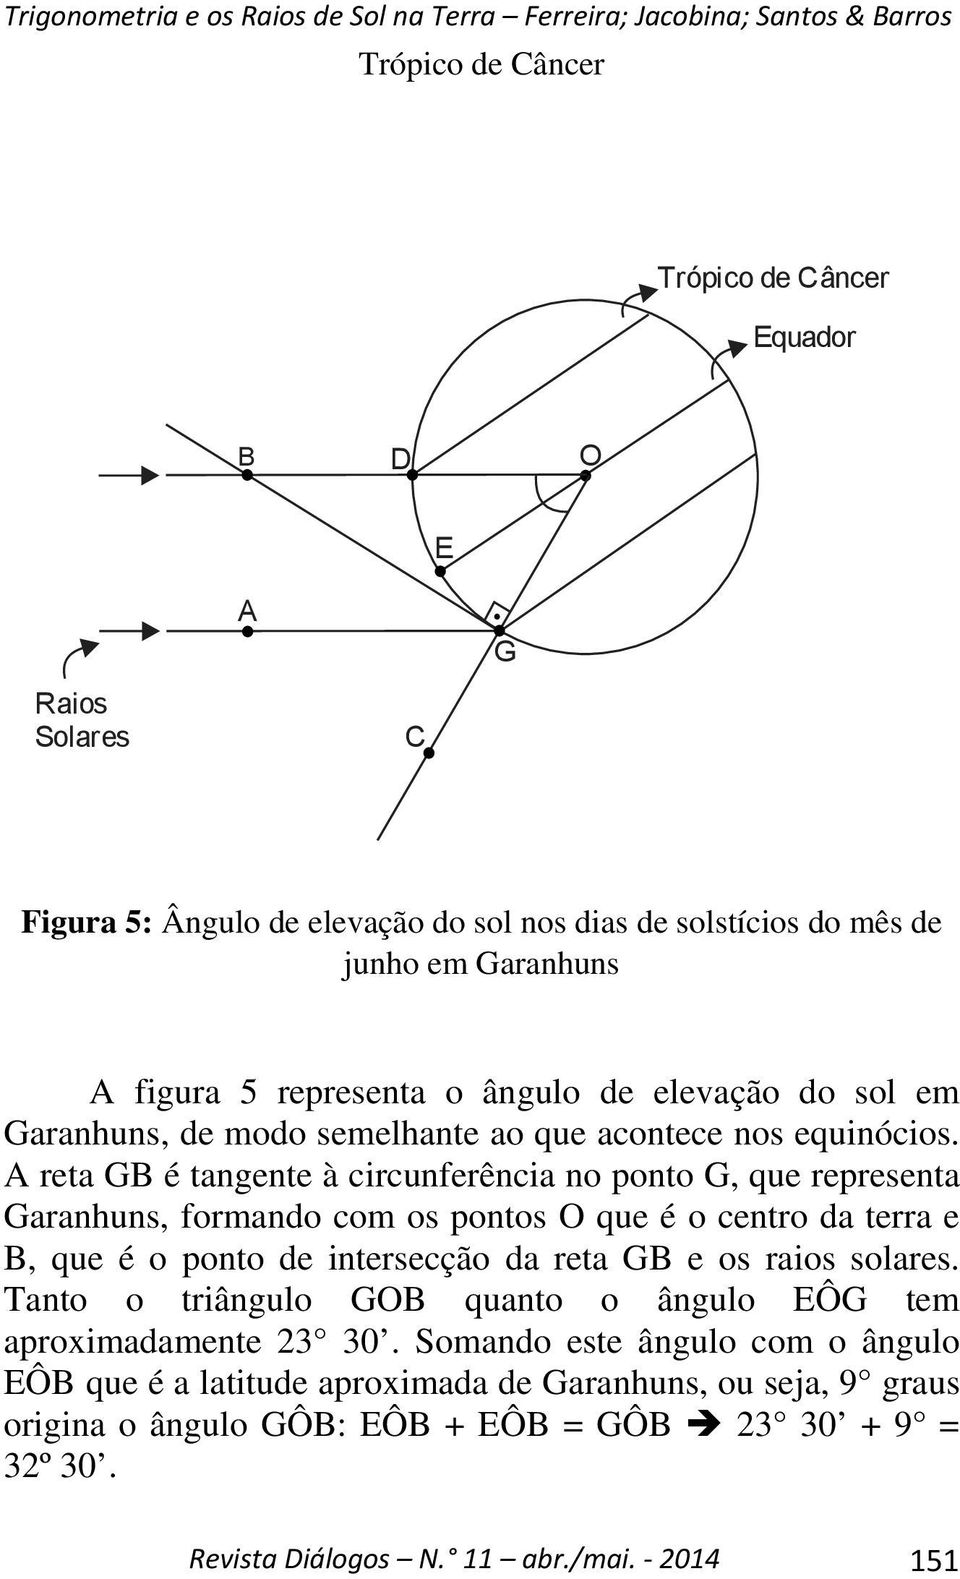 A reta GB é tangente à circunferência no ponto G, que representa Garanhuns, formando com os pontos O que é o centro da terra e B, que é o ponto de intersecção da reta GB e os raios